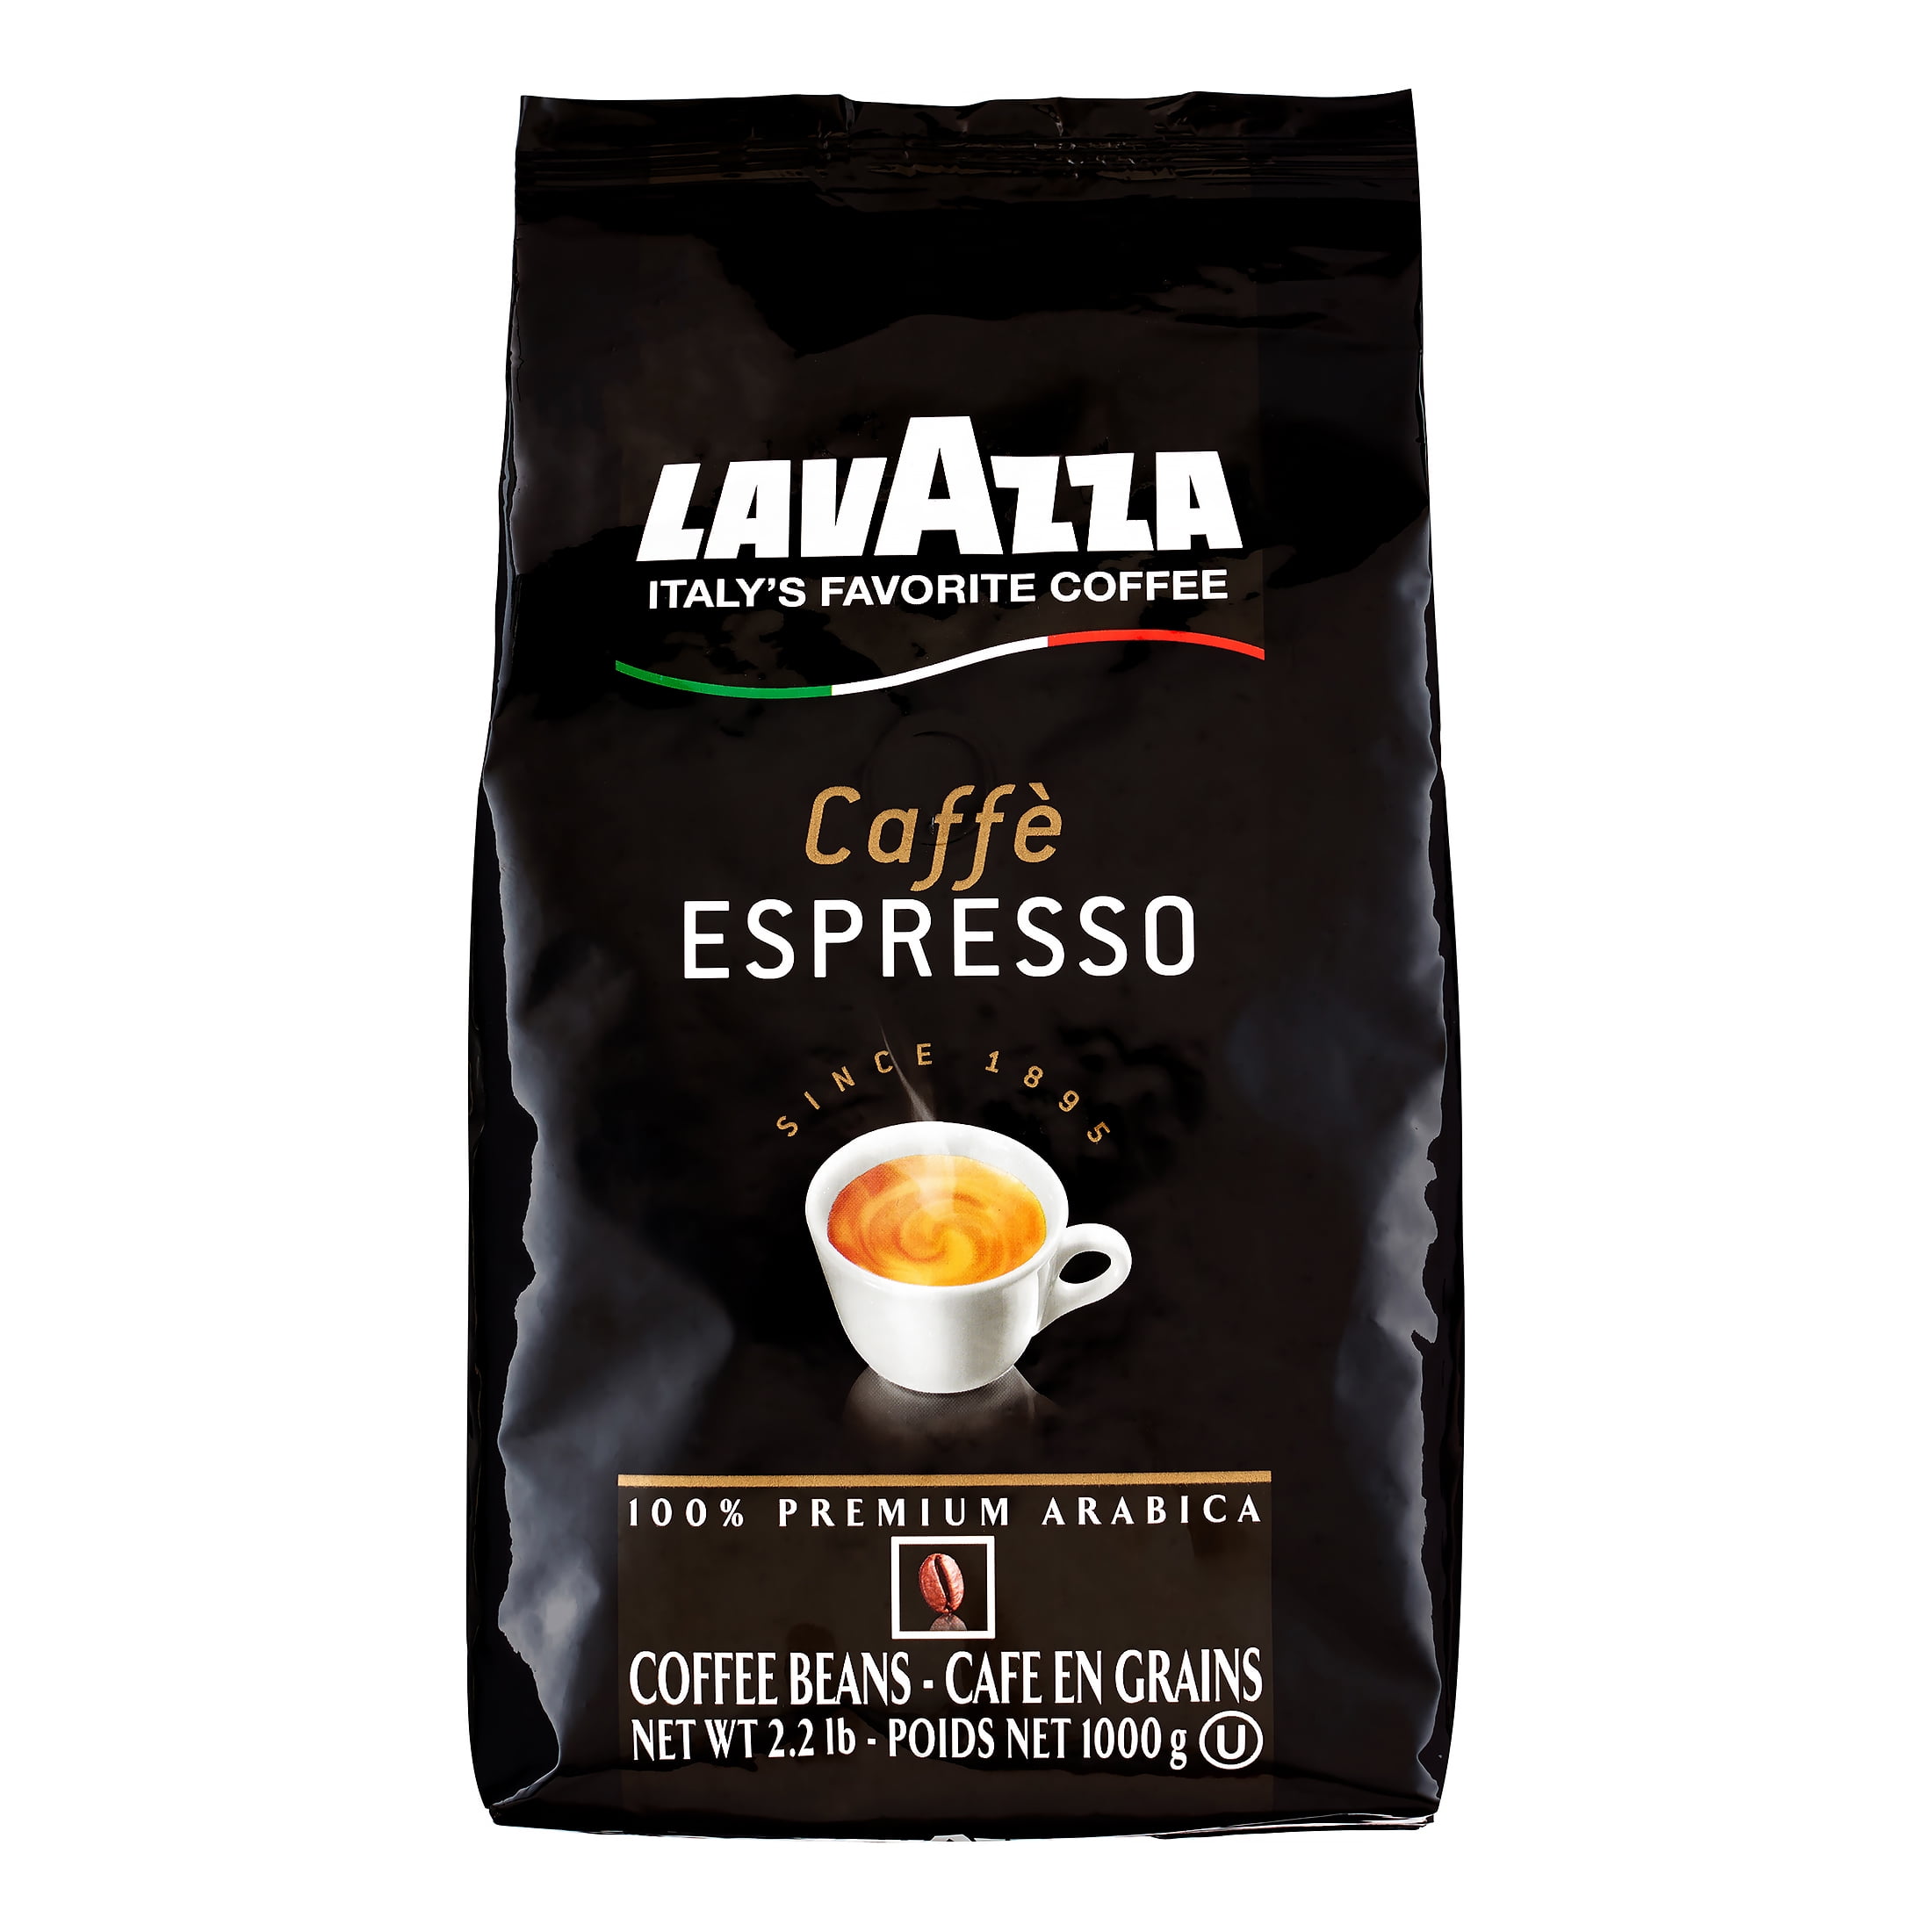 Lavazza whole bean 4.45/lb at Costco Coffee Beans - Espresso Arabica and Wh...